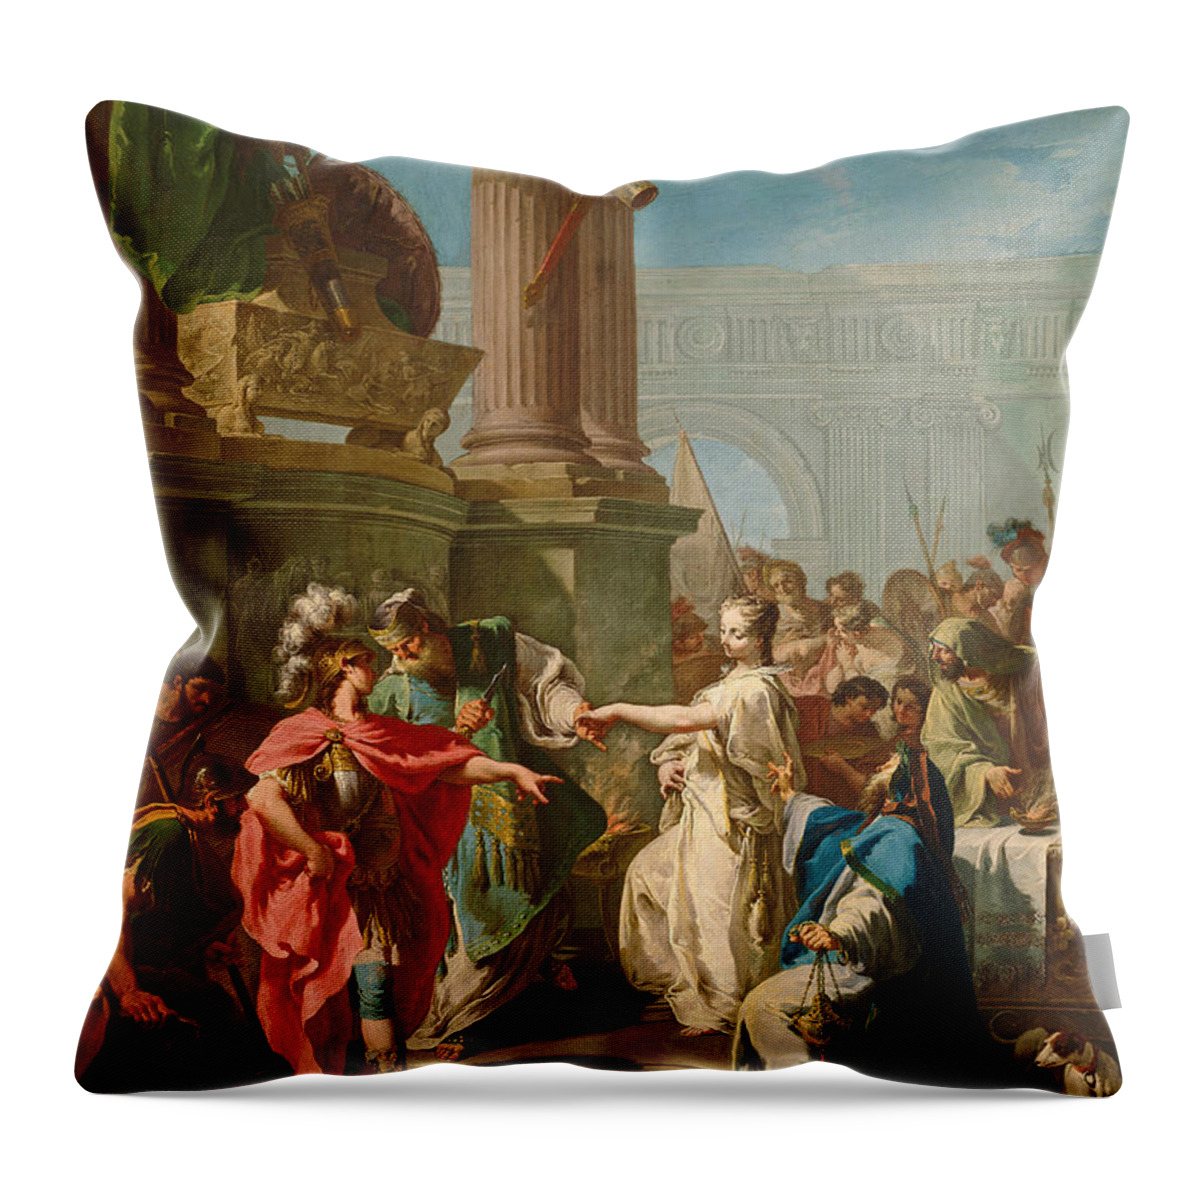 Giambattista Pittoni Throw Pillow featuring the painting The Sacrifice of Polyxena by Giambattista Pittoni